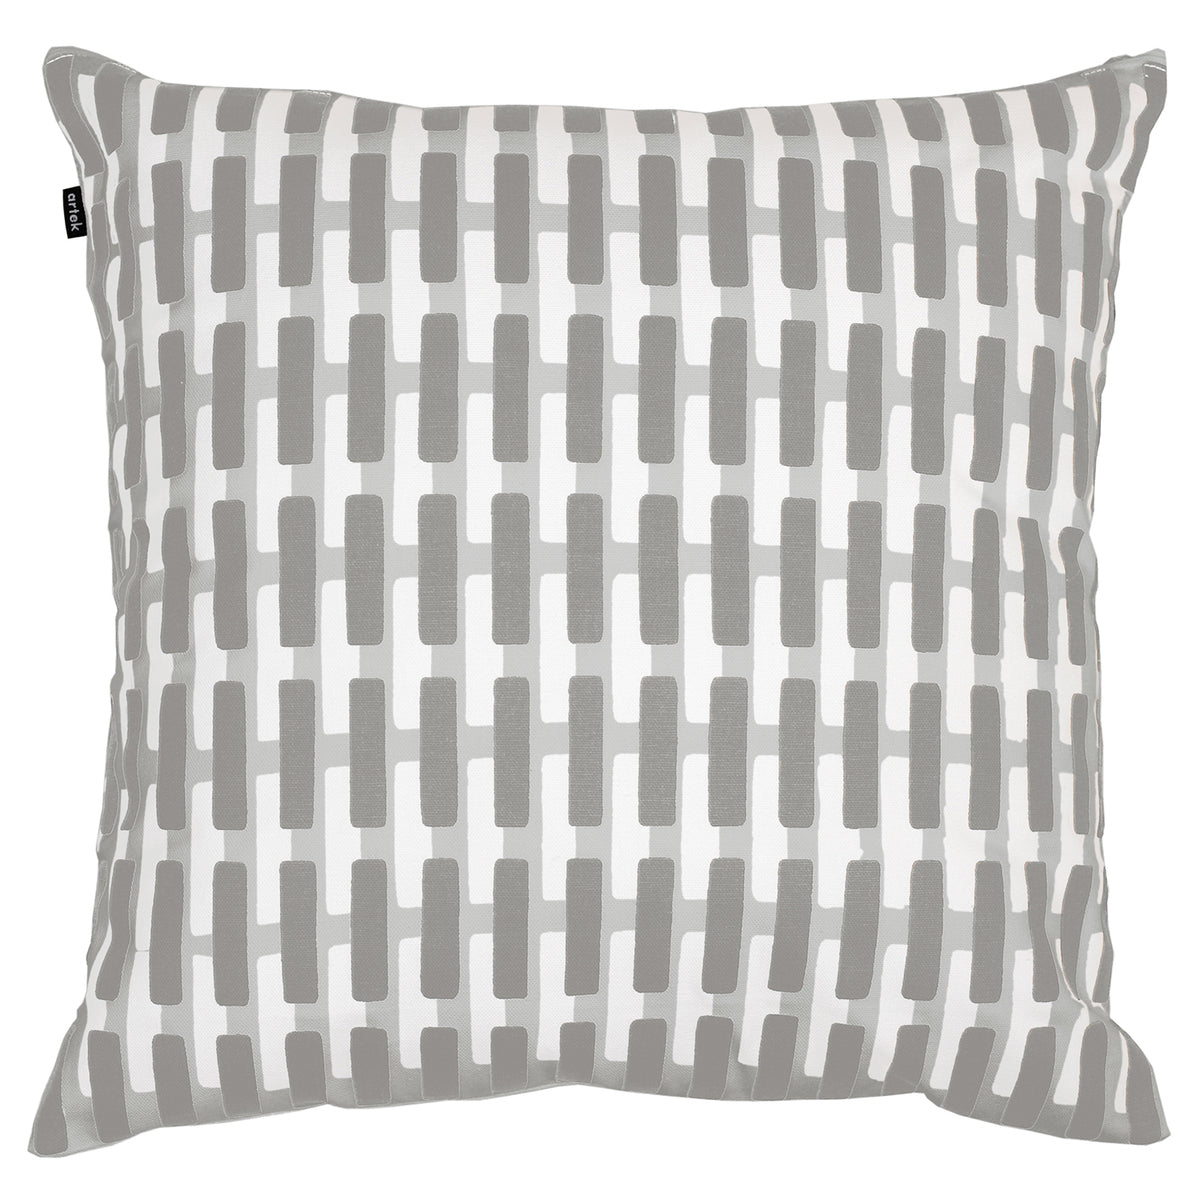 Siena cushion cover, 50 x 50 cm, grey - light grey